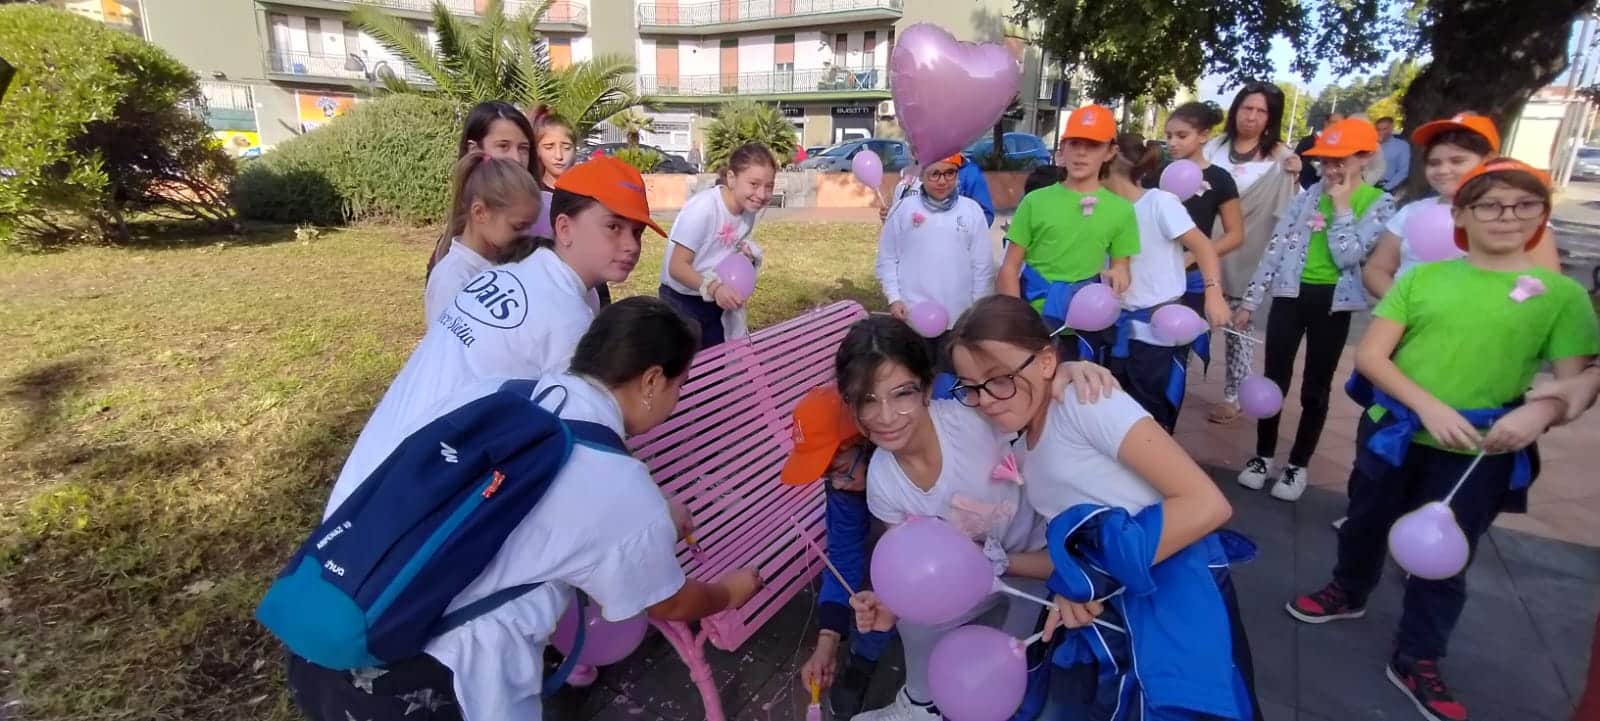 Lotta contro il cancro al seno, inaugurata panchina rosa a Mascalucia: presenti alcuni alunni dell’Istituto Comprensivo “Fava”